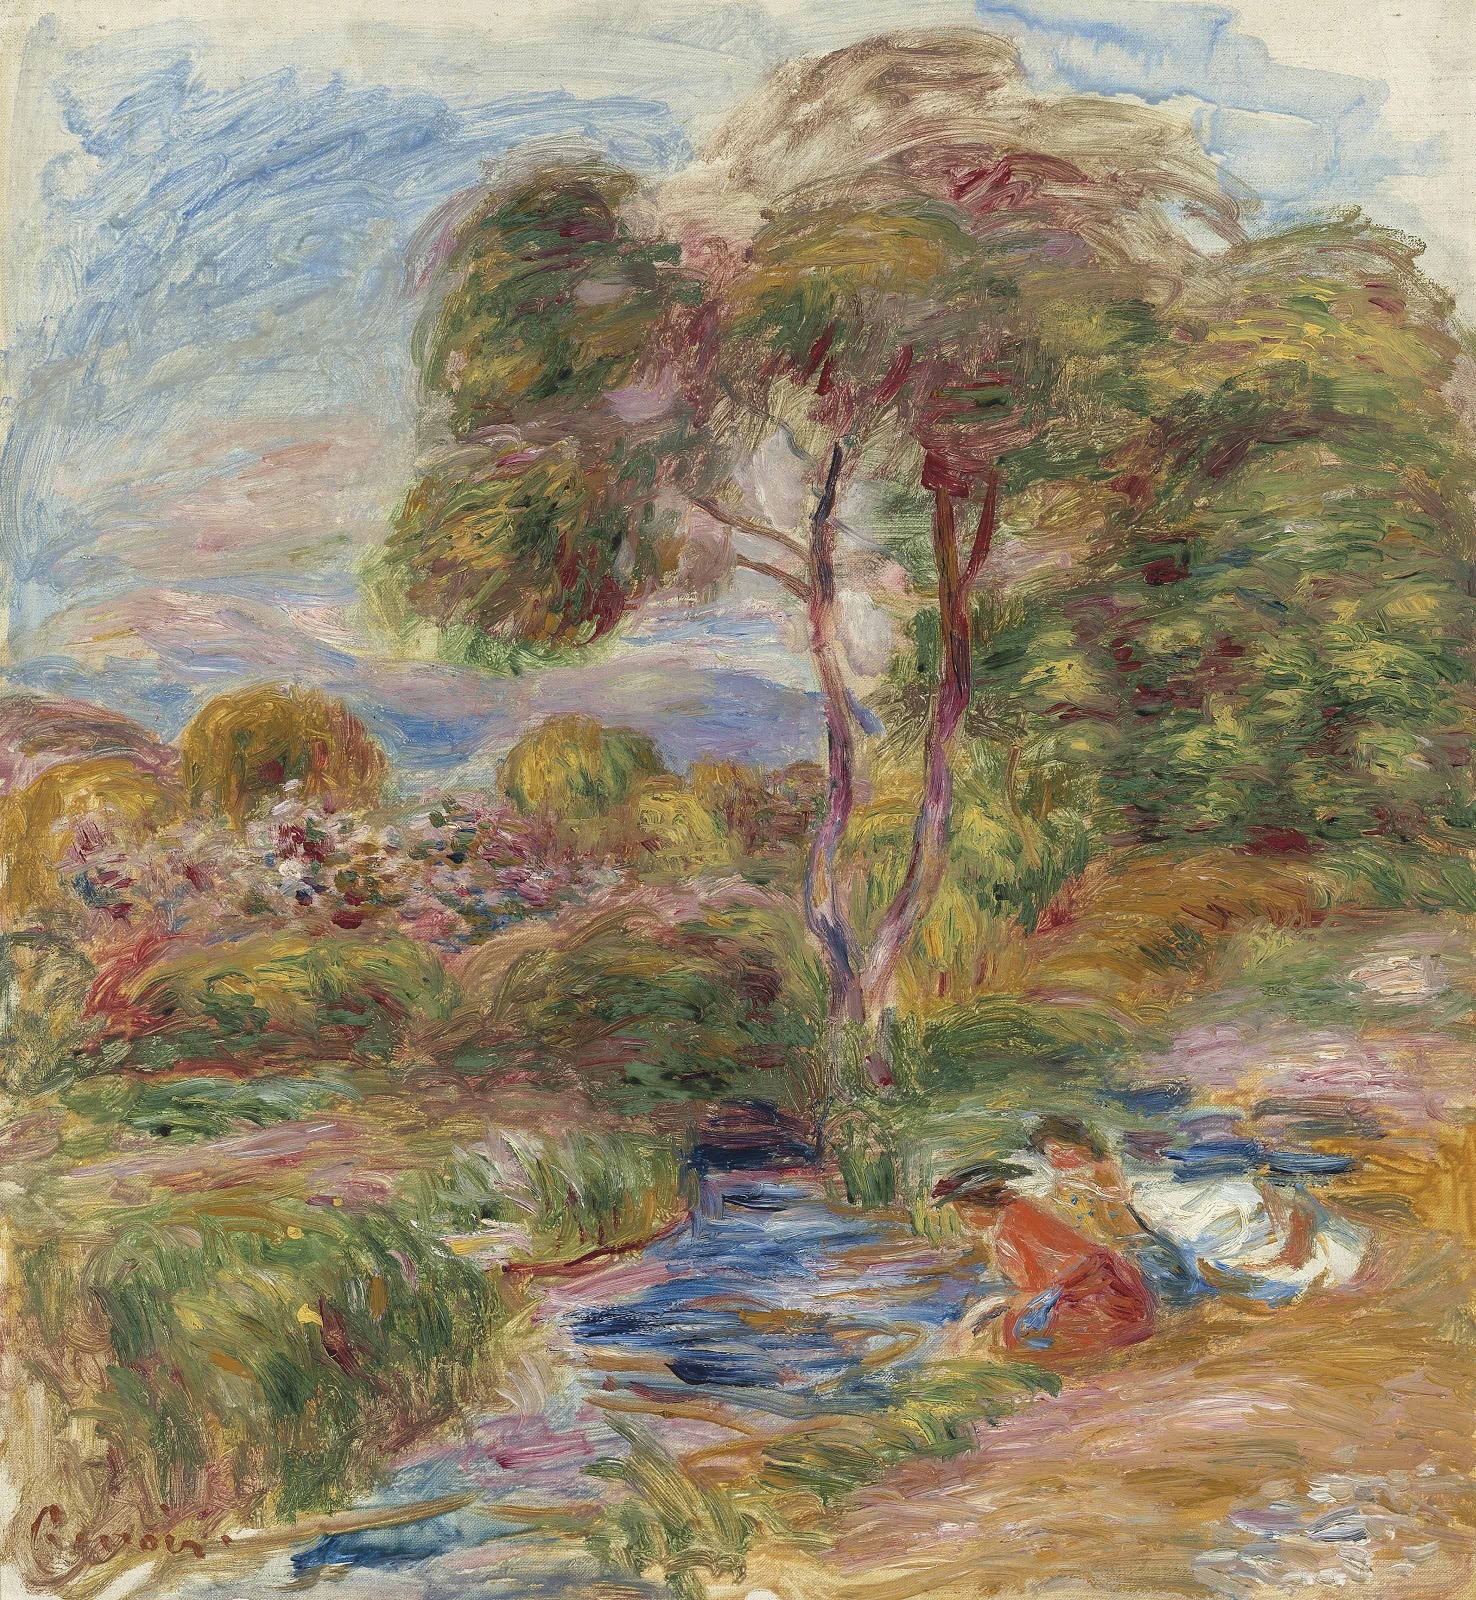 Pierre+Auguste+Renoir-1841-1-19 (845).jpg